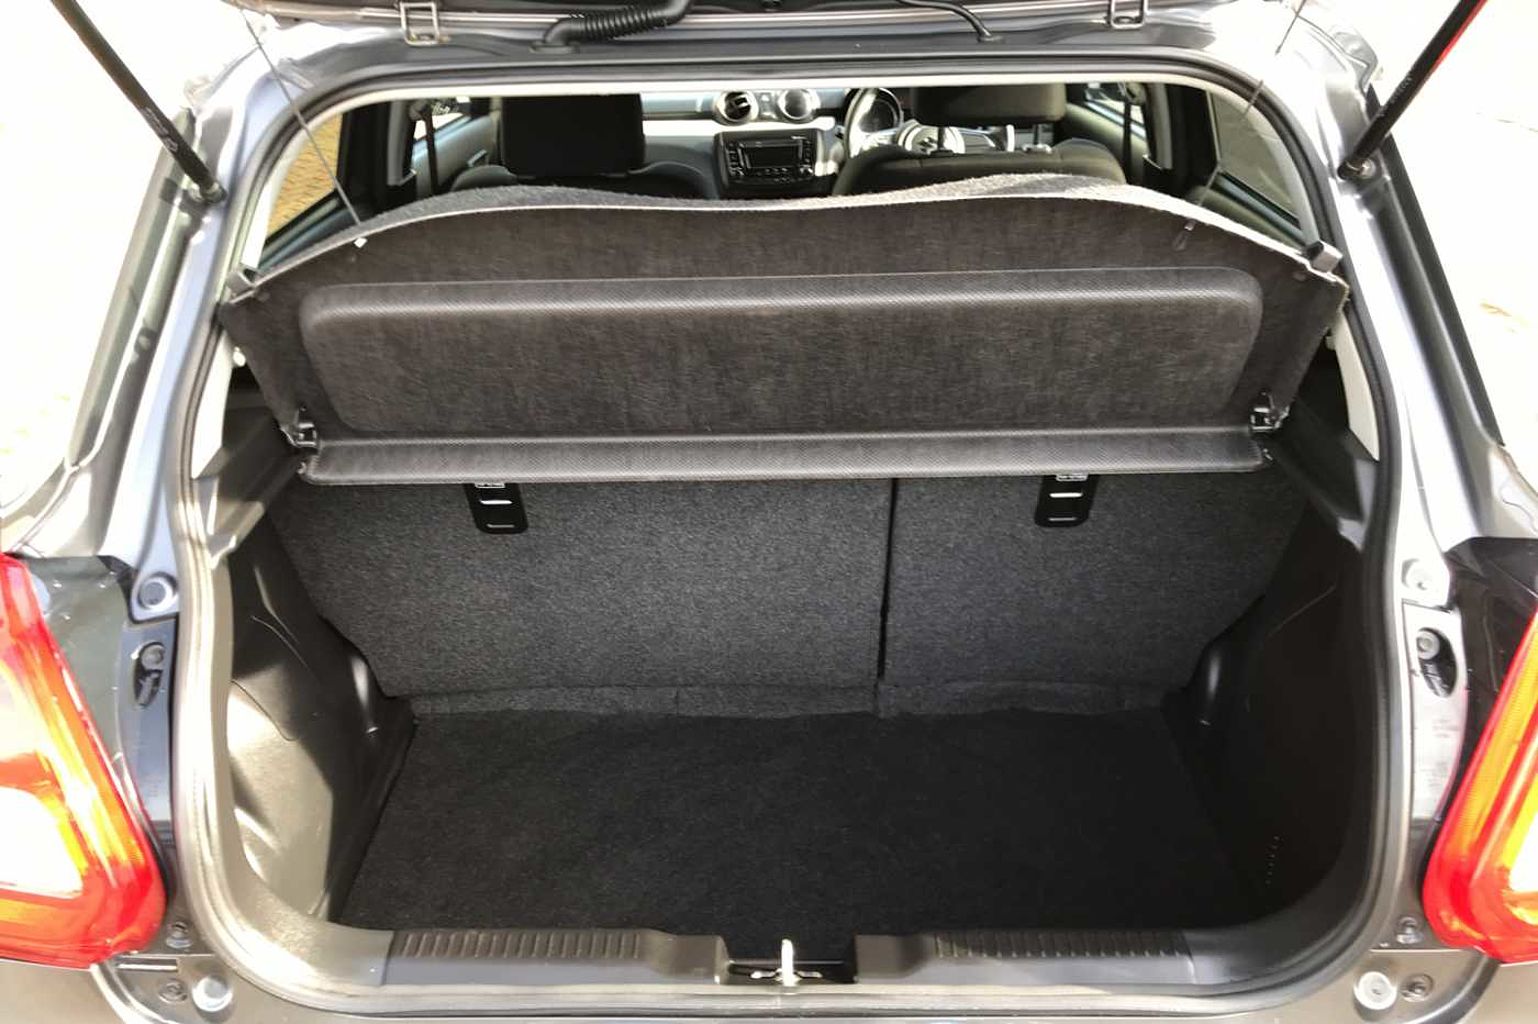 Suzuki Swift 5-Door Hatchback 1.2 Dualjet (90ps) Attitude